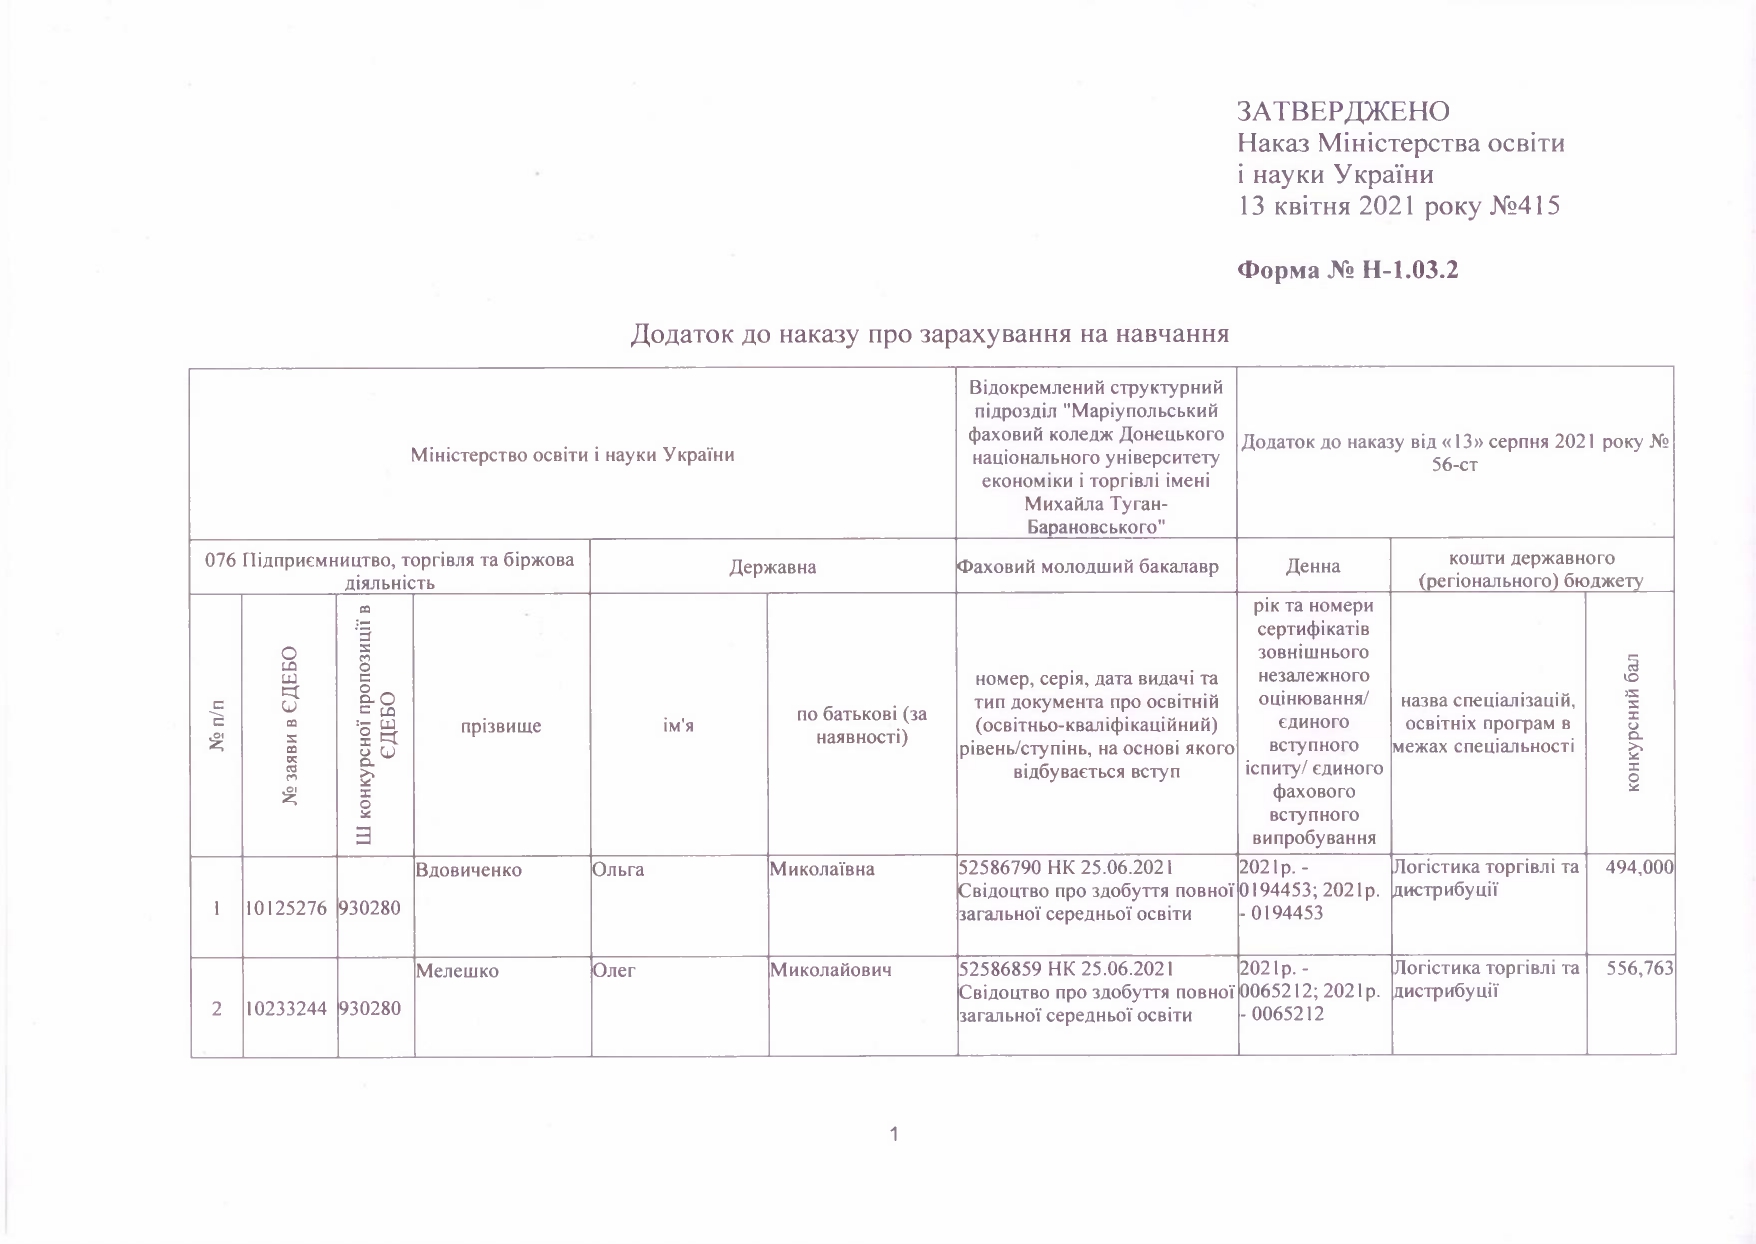 Наказ про зарахування на навчання № 56-ст від 13.08.2021 р.